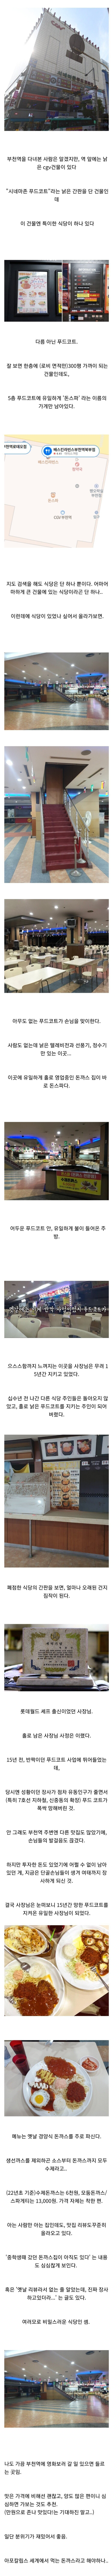 Secret restaurant in Bucheon station.jpg